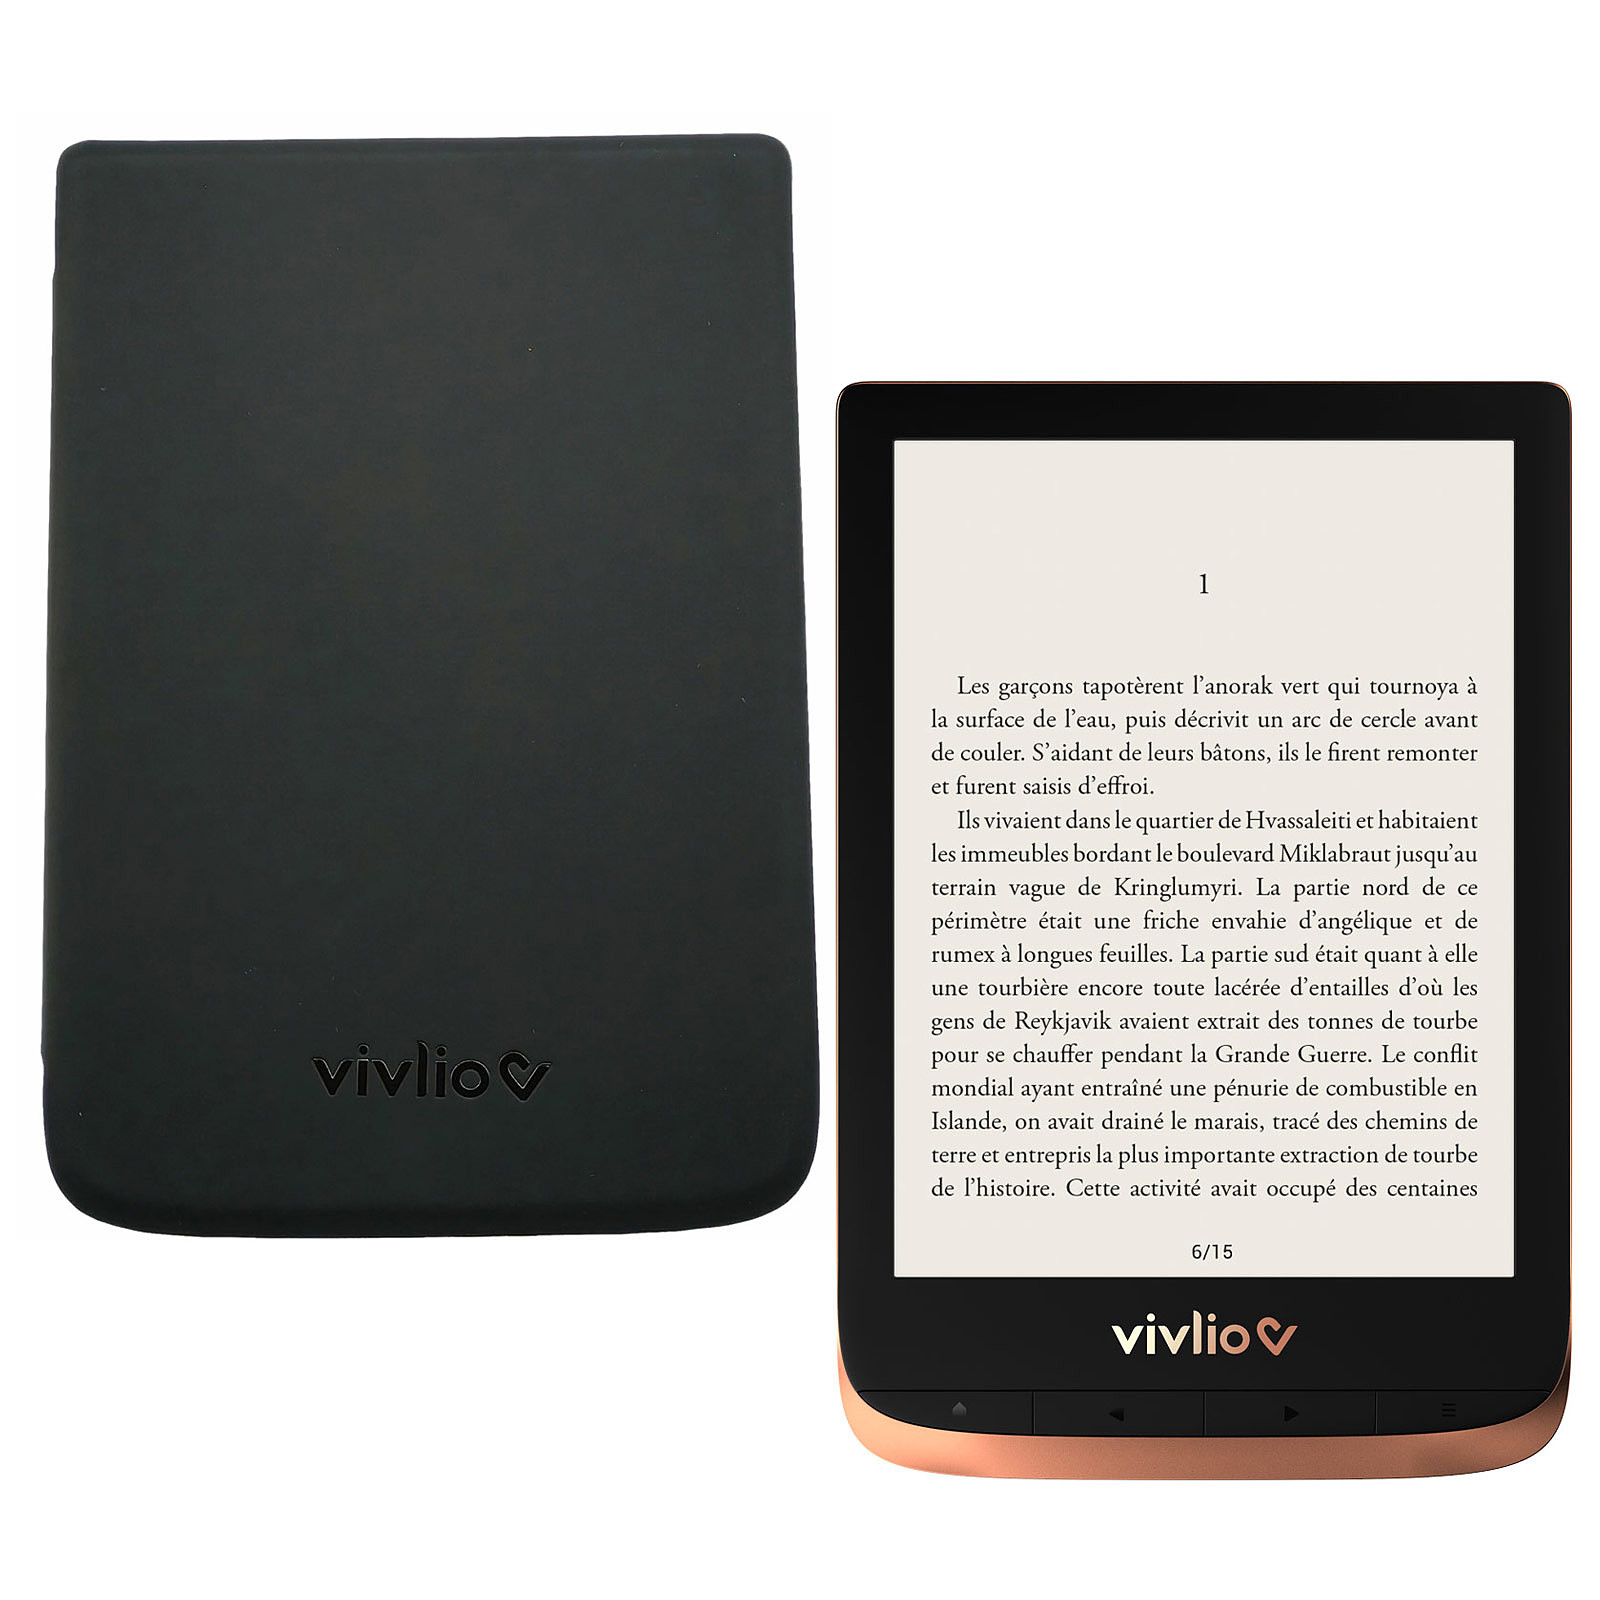 Vivlio Touch HD Plus Cuivre/Noir + Pack d'eBooks OFFERT + Housse Noire - Liseuse eBook Vivlio